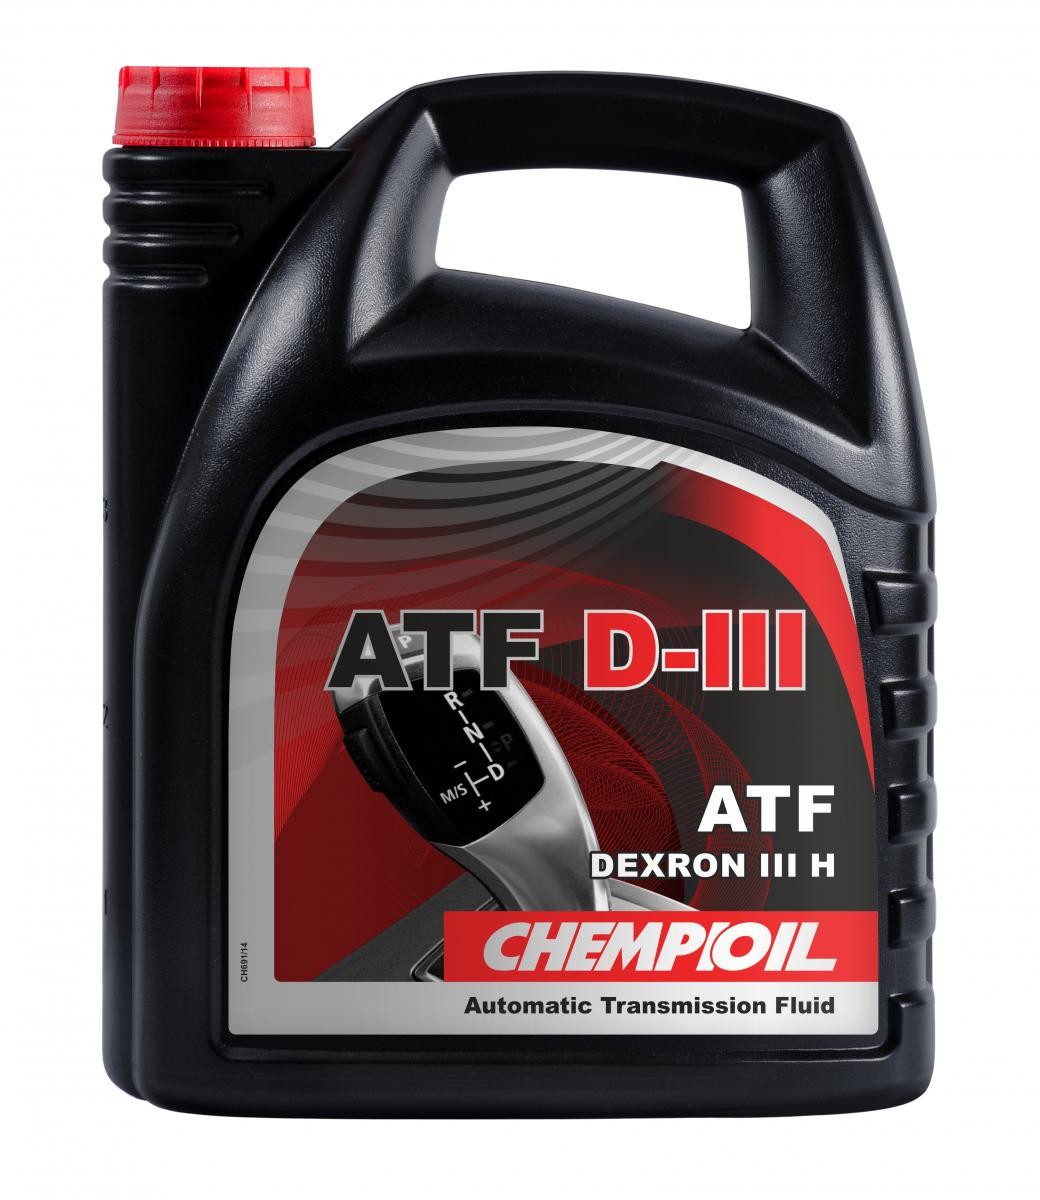 CHEMPIOIL ATF D-III CH8902-4 Hydraulic Oil DEXRON III H